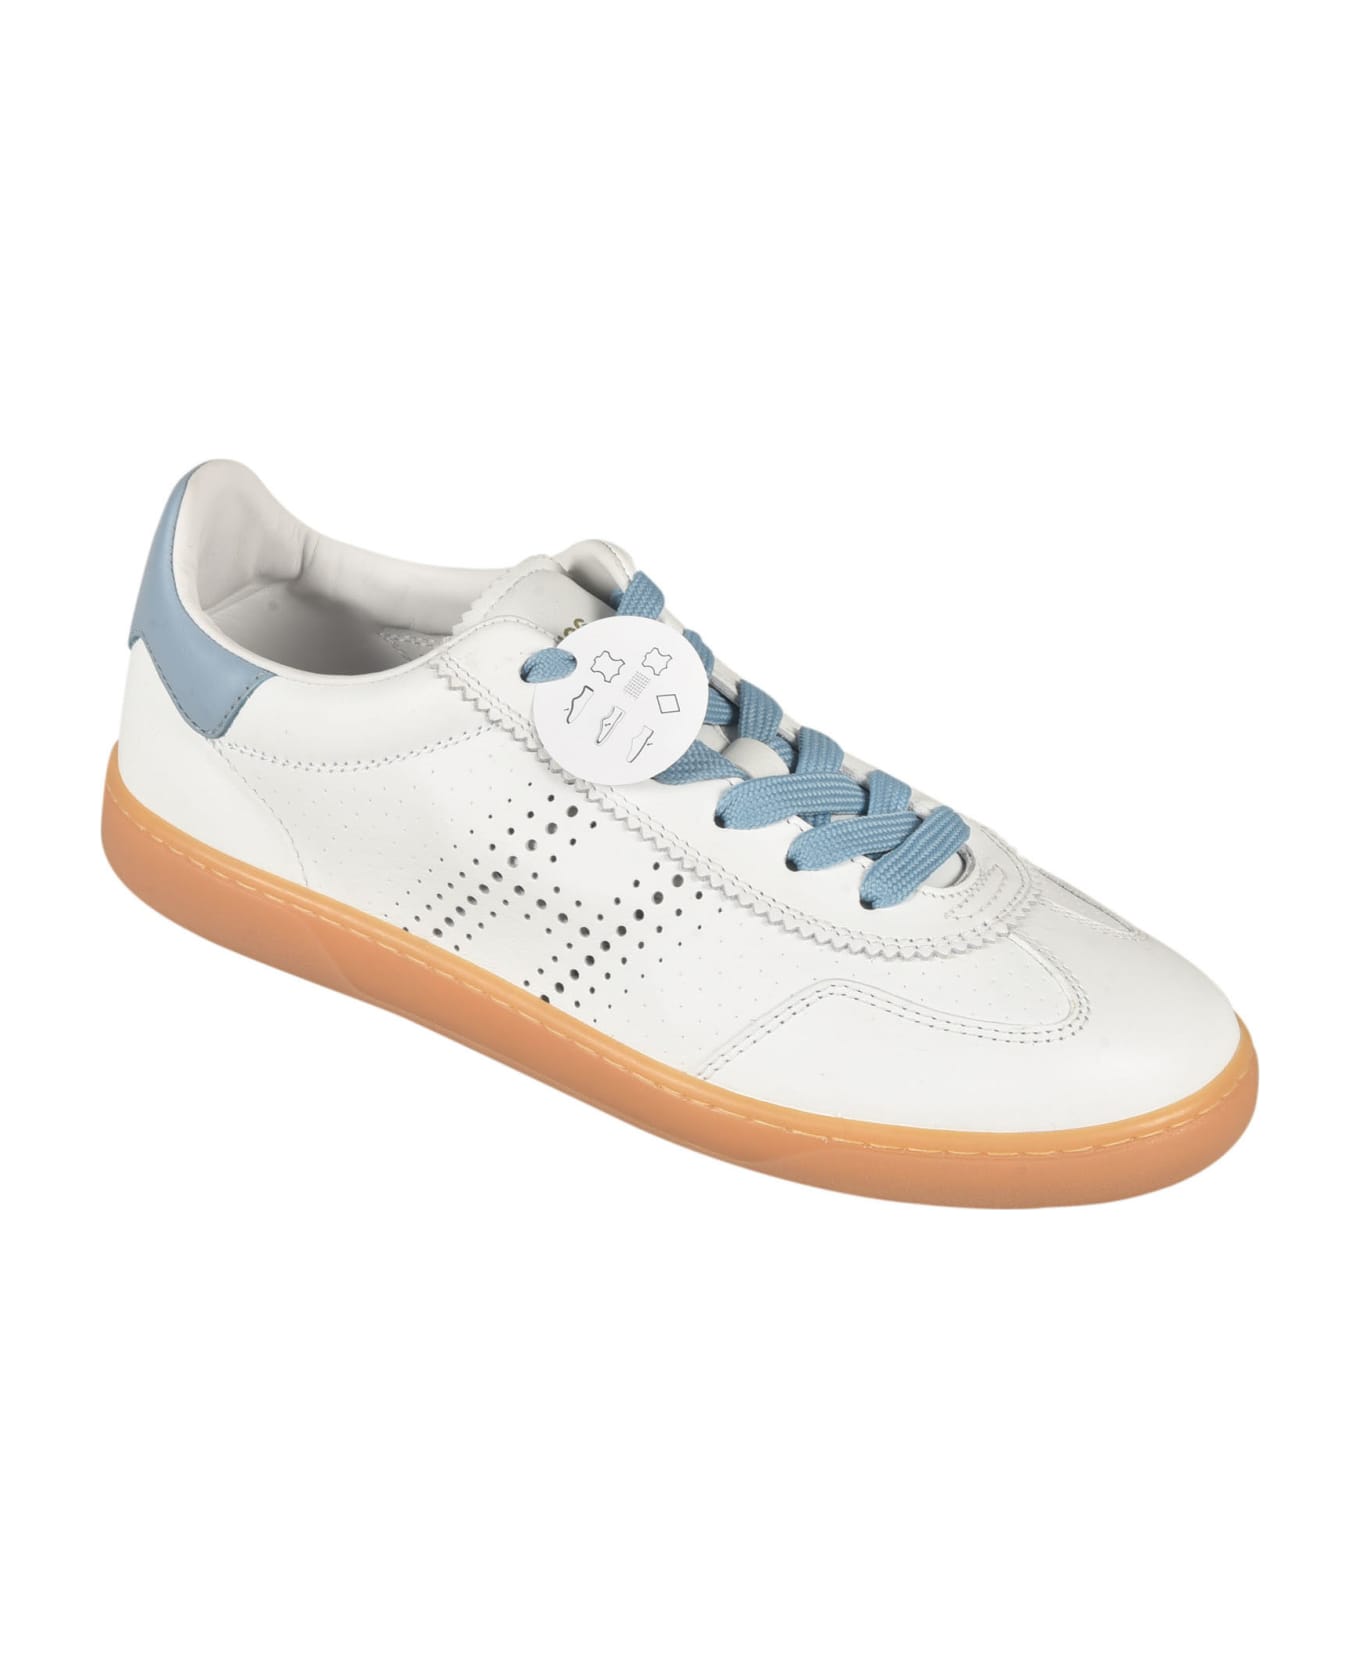 Hogan Perforated Low Sneakers - Sum Bianco + Azzurro スニーカー